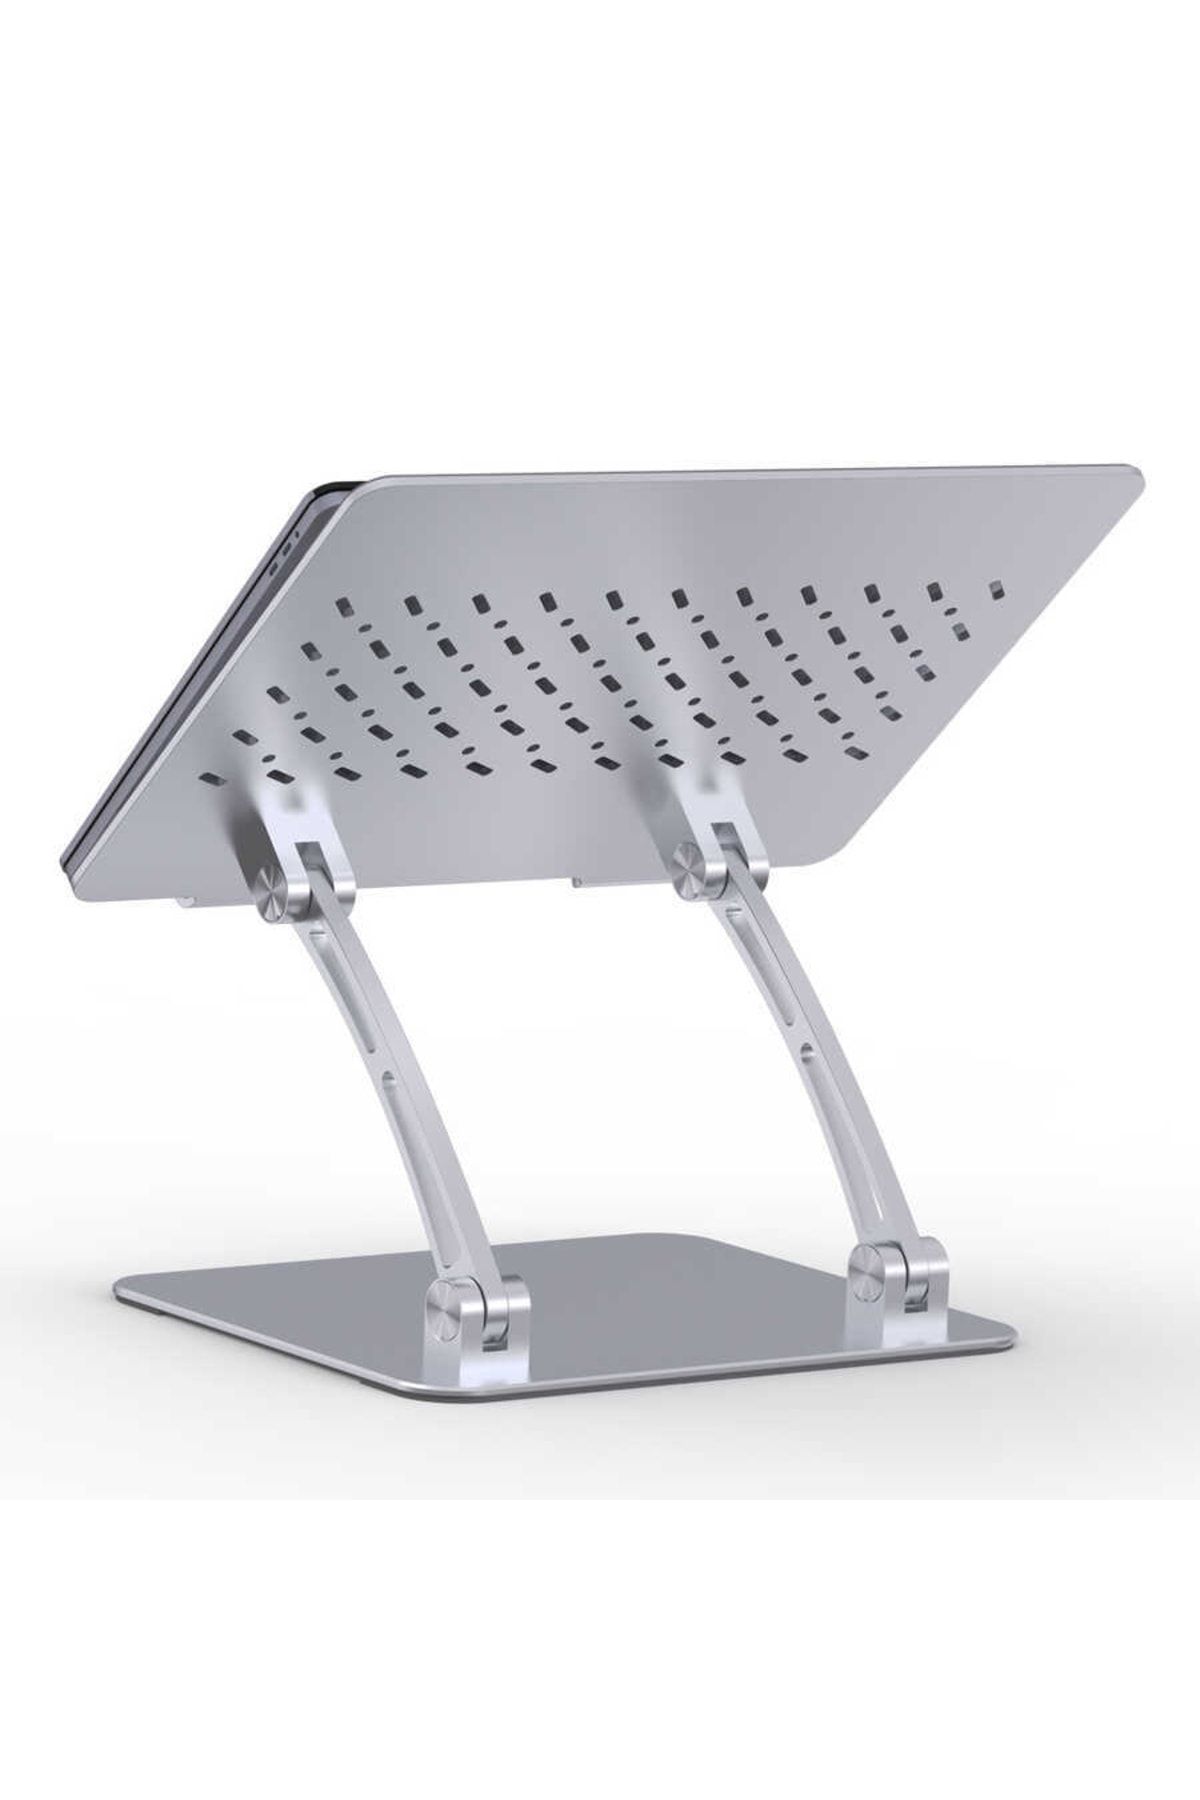 WIWU S700 Laptop Standı Eğim Ve Yükseklik Ayarlı Katlanabilir Alüminyum Alaşım Macbook Stand